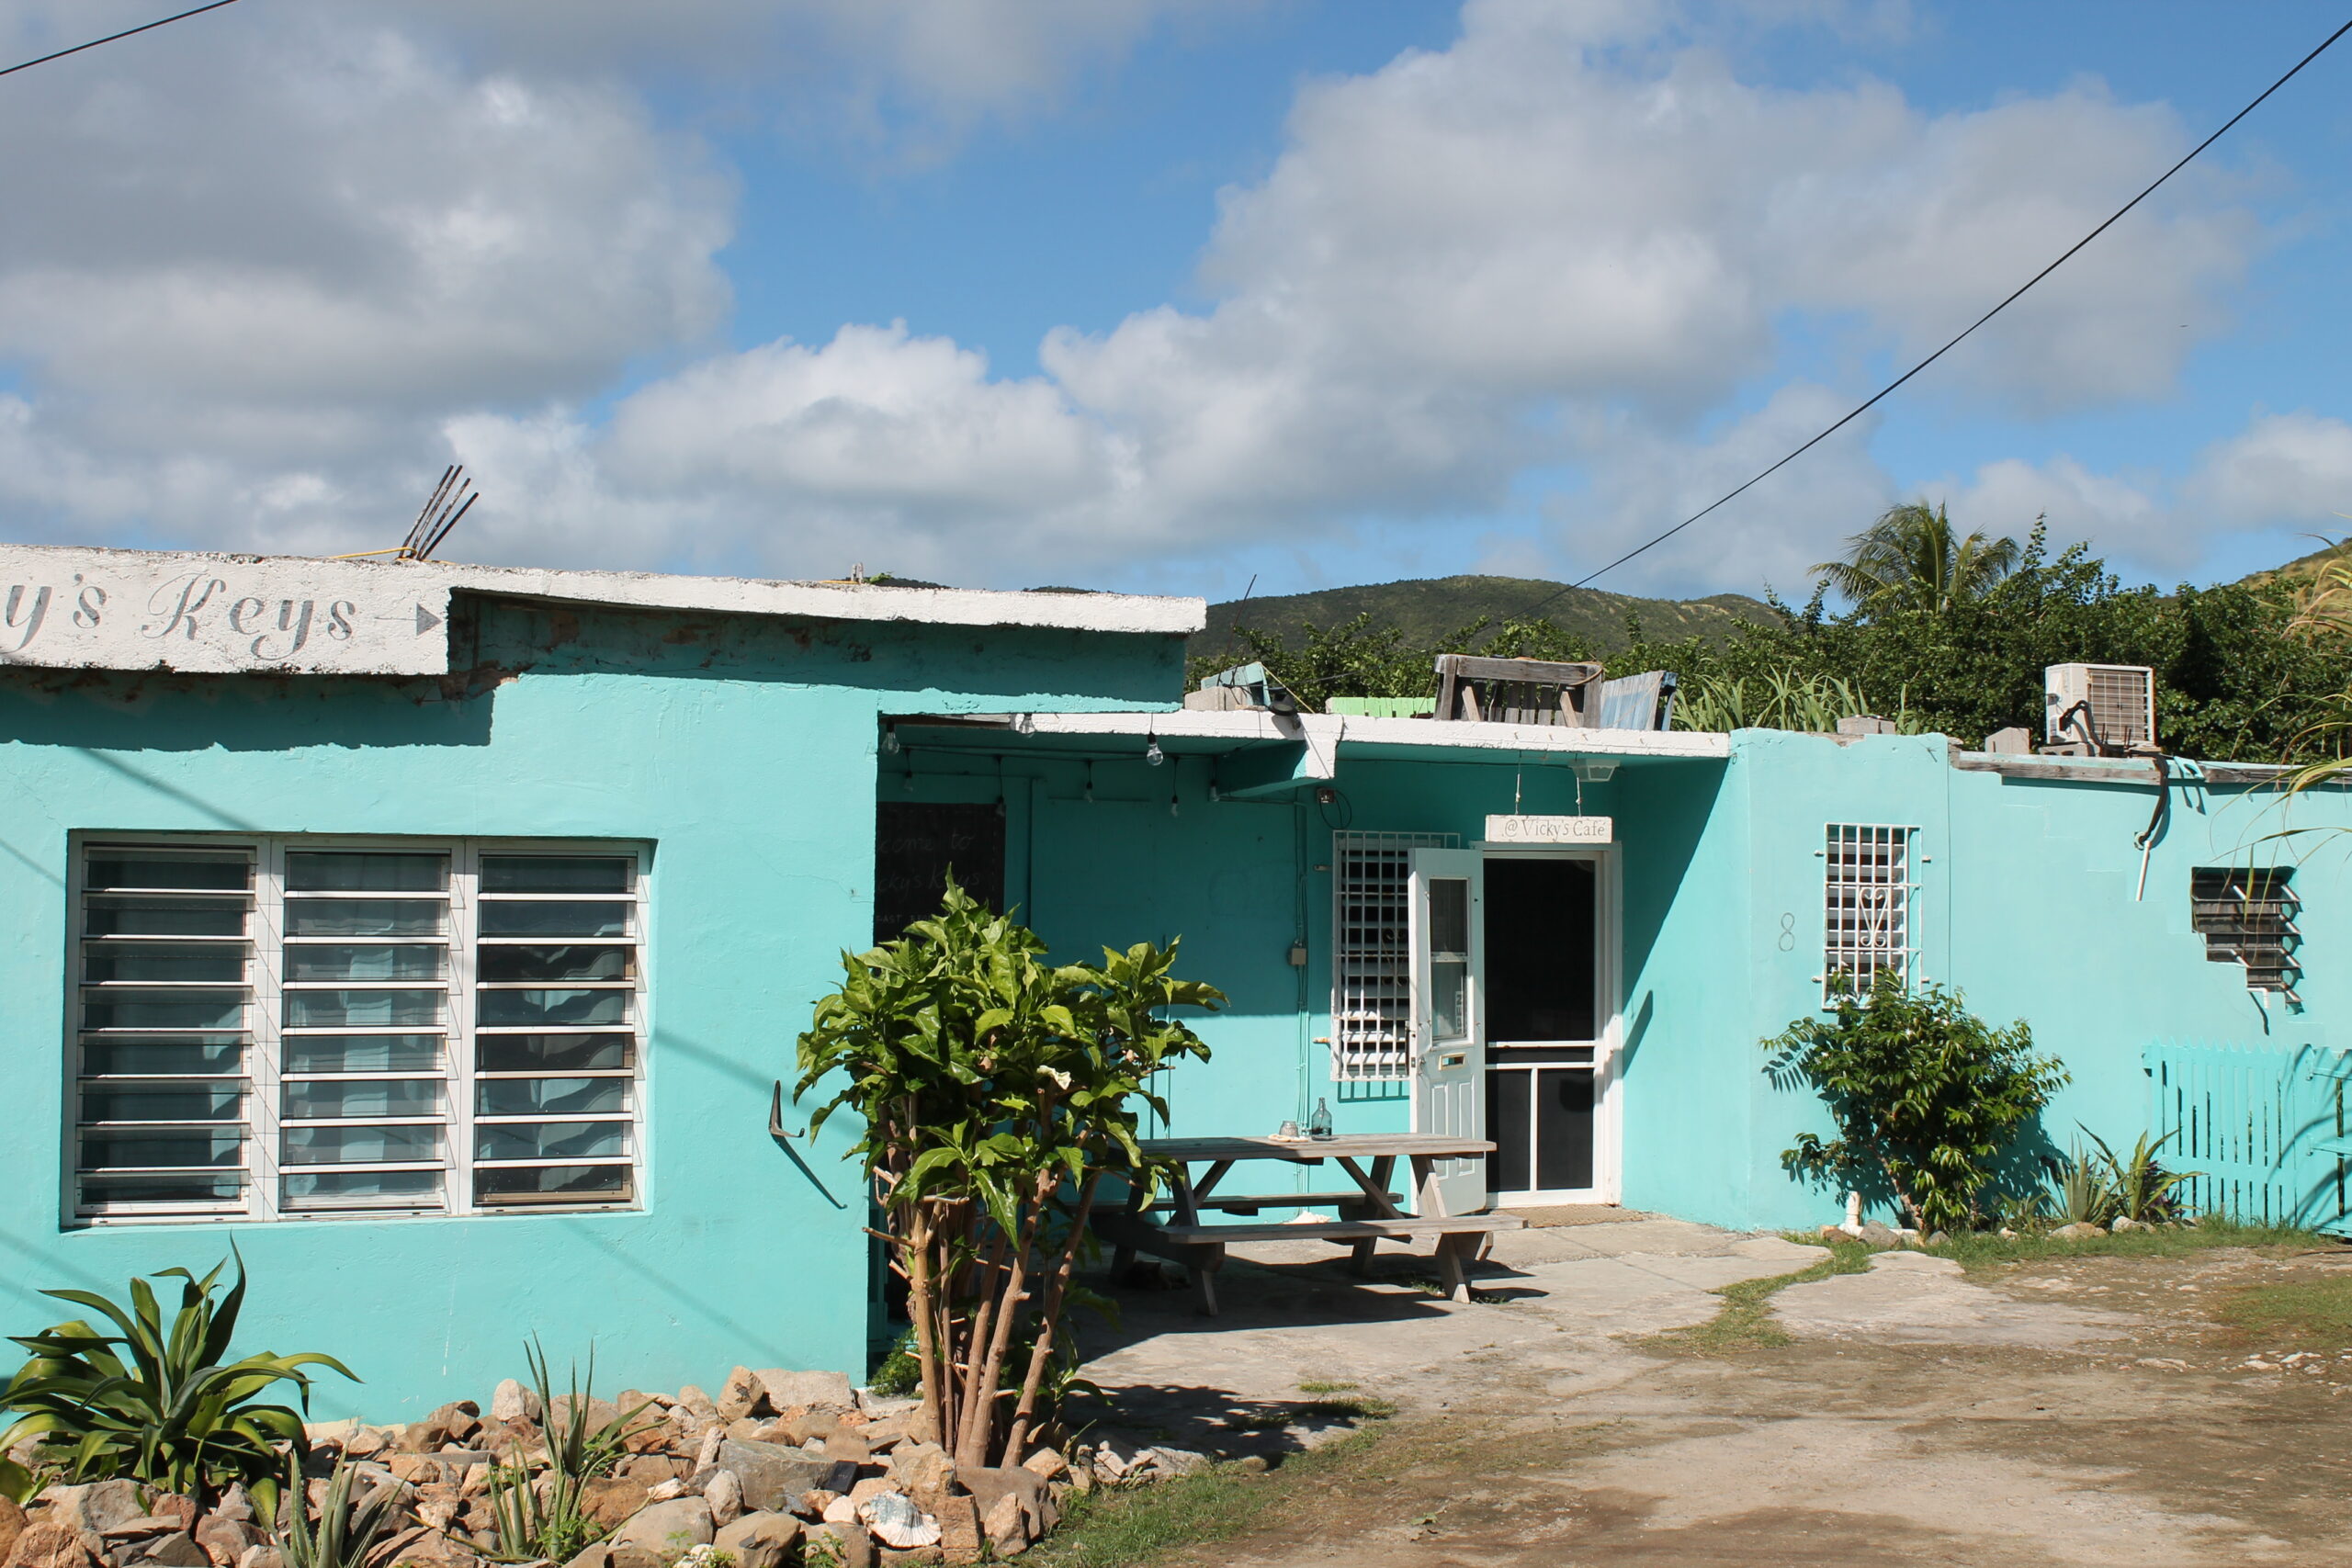 St. Maarten Volunteer Center for Eco Projects seeks volunteers